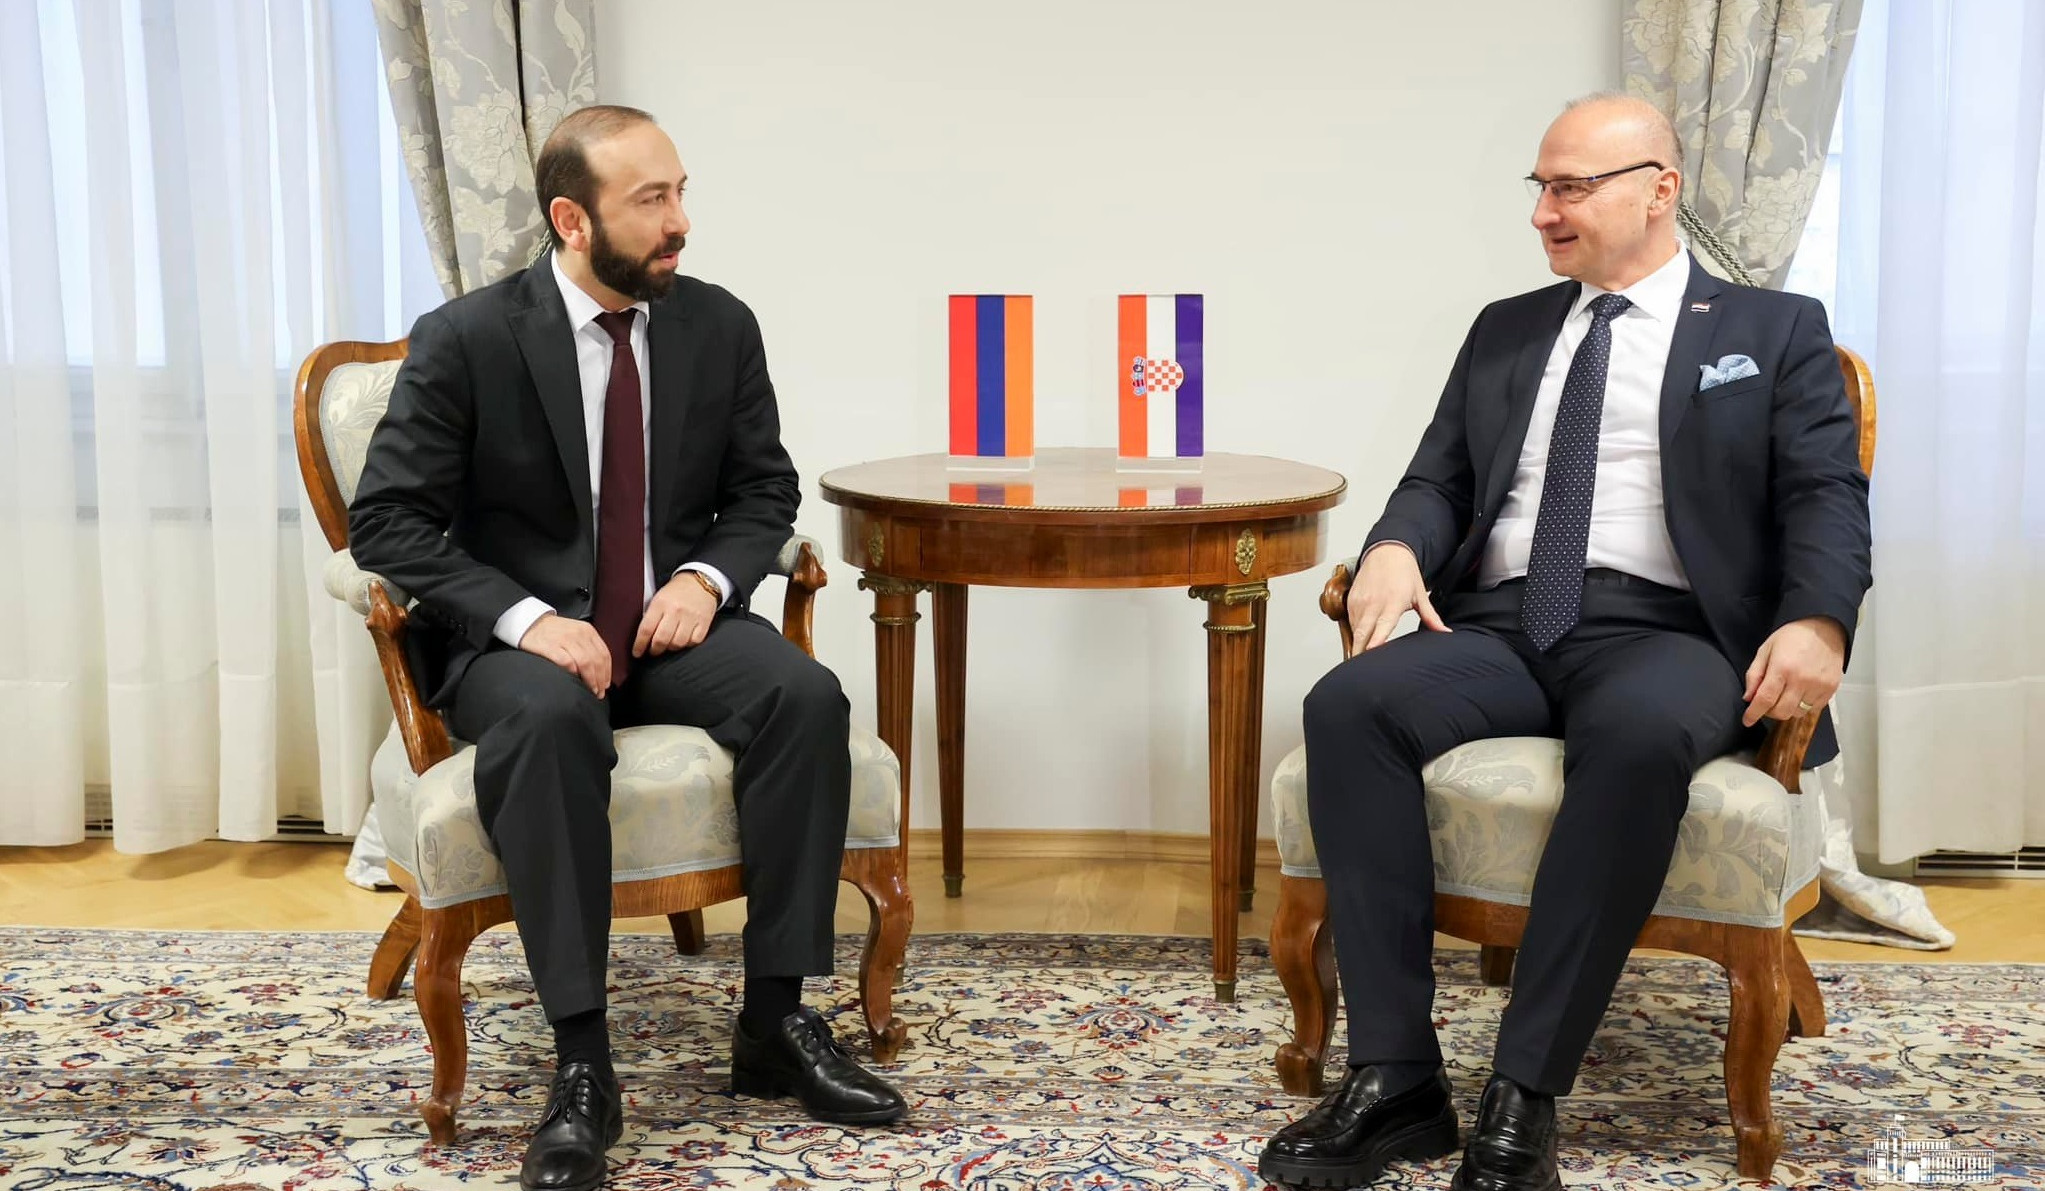 Mirzoyan's tête-à-tête meeting with Minister Gordan Grlić-Radman commenced